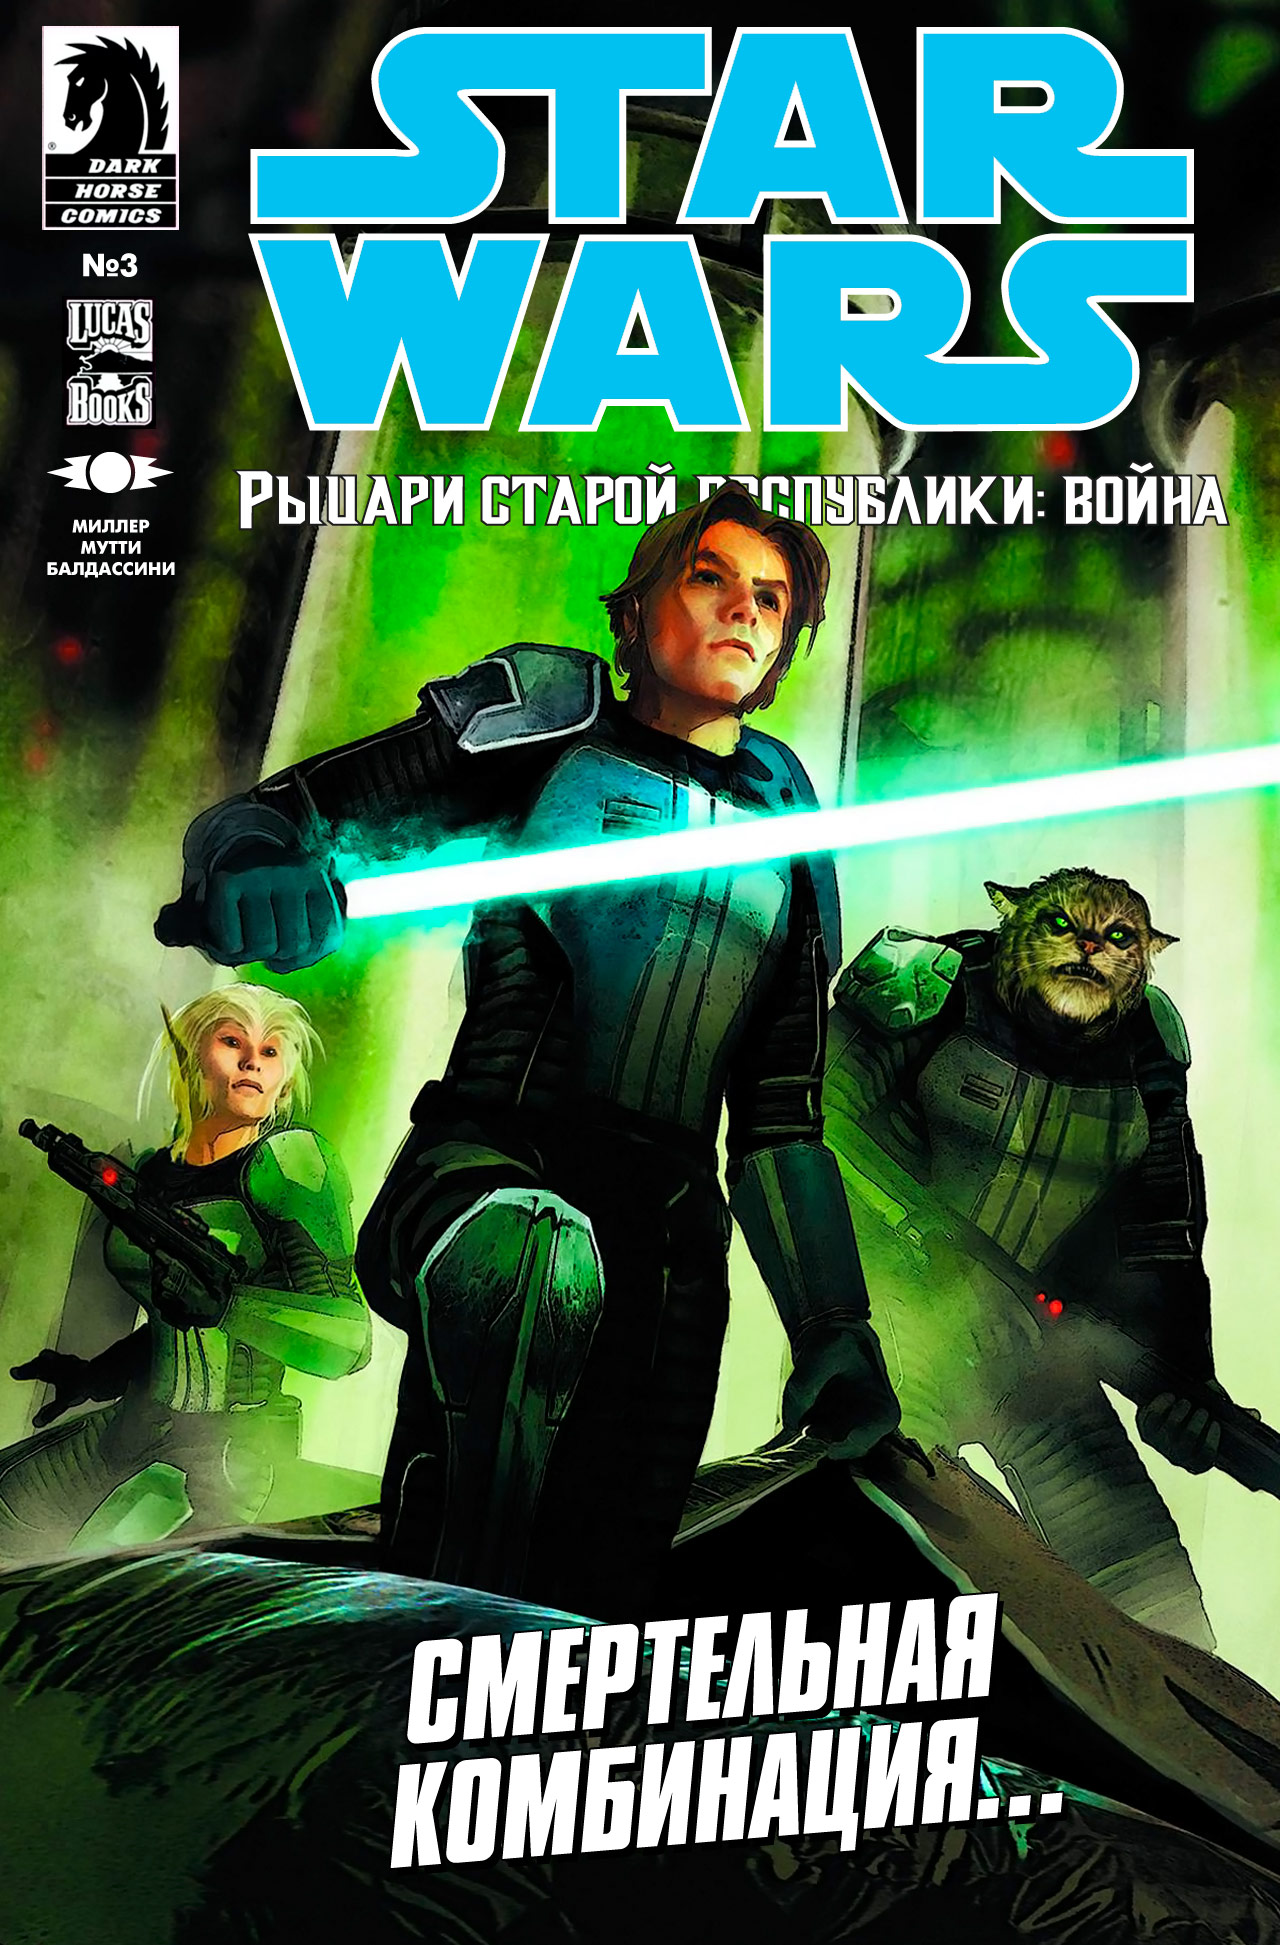 Звёздные Войны: Рыцари Старой Республики - Война Сингл Война. Часть 03